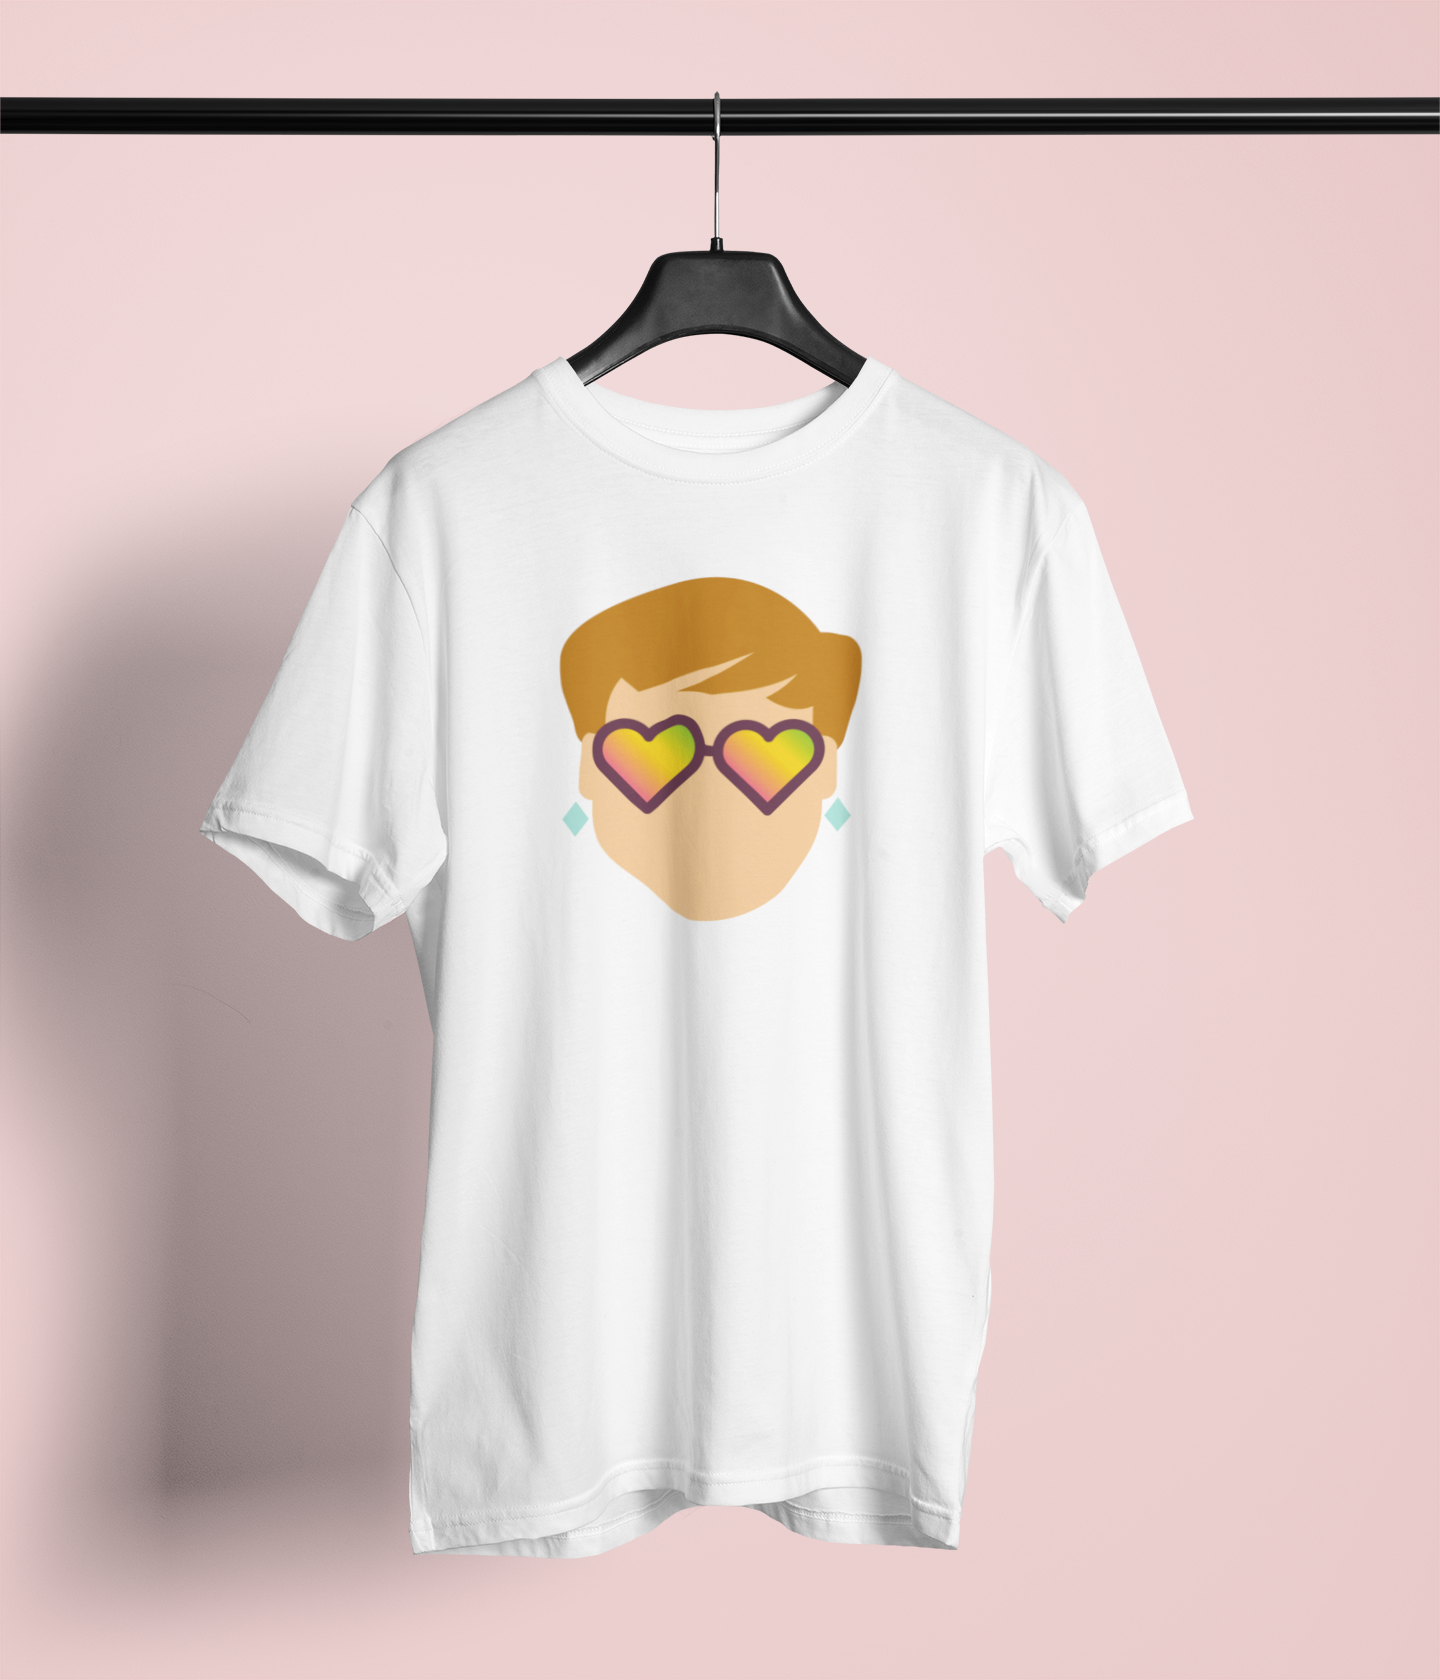 Camiseta "Elton John" Clássica - Música